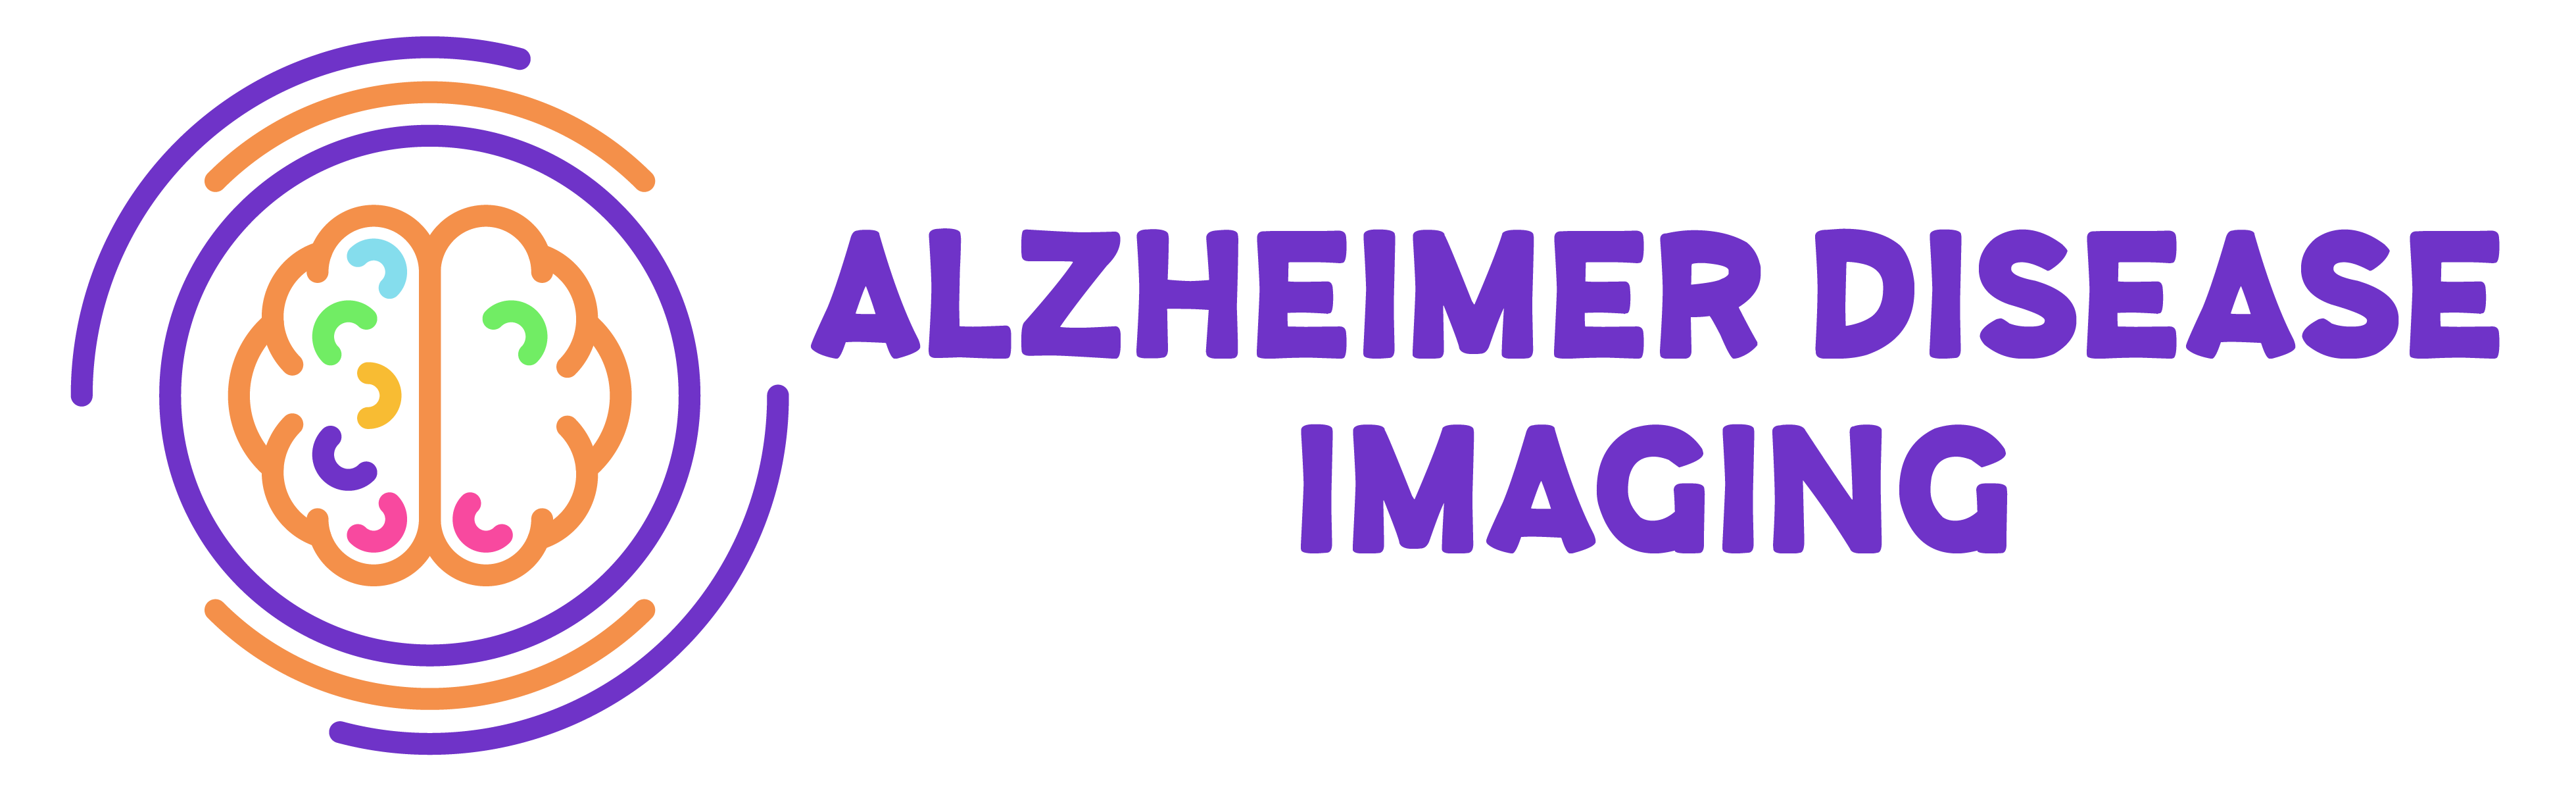 Alzheimer Disease Imaging New York Metro